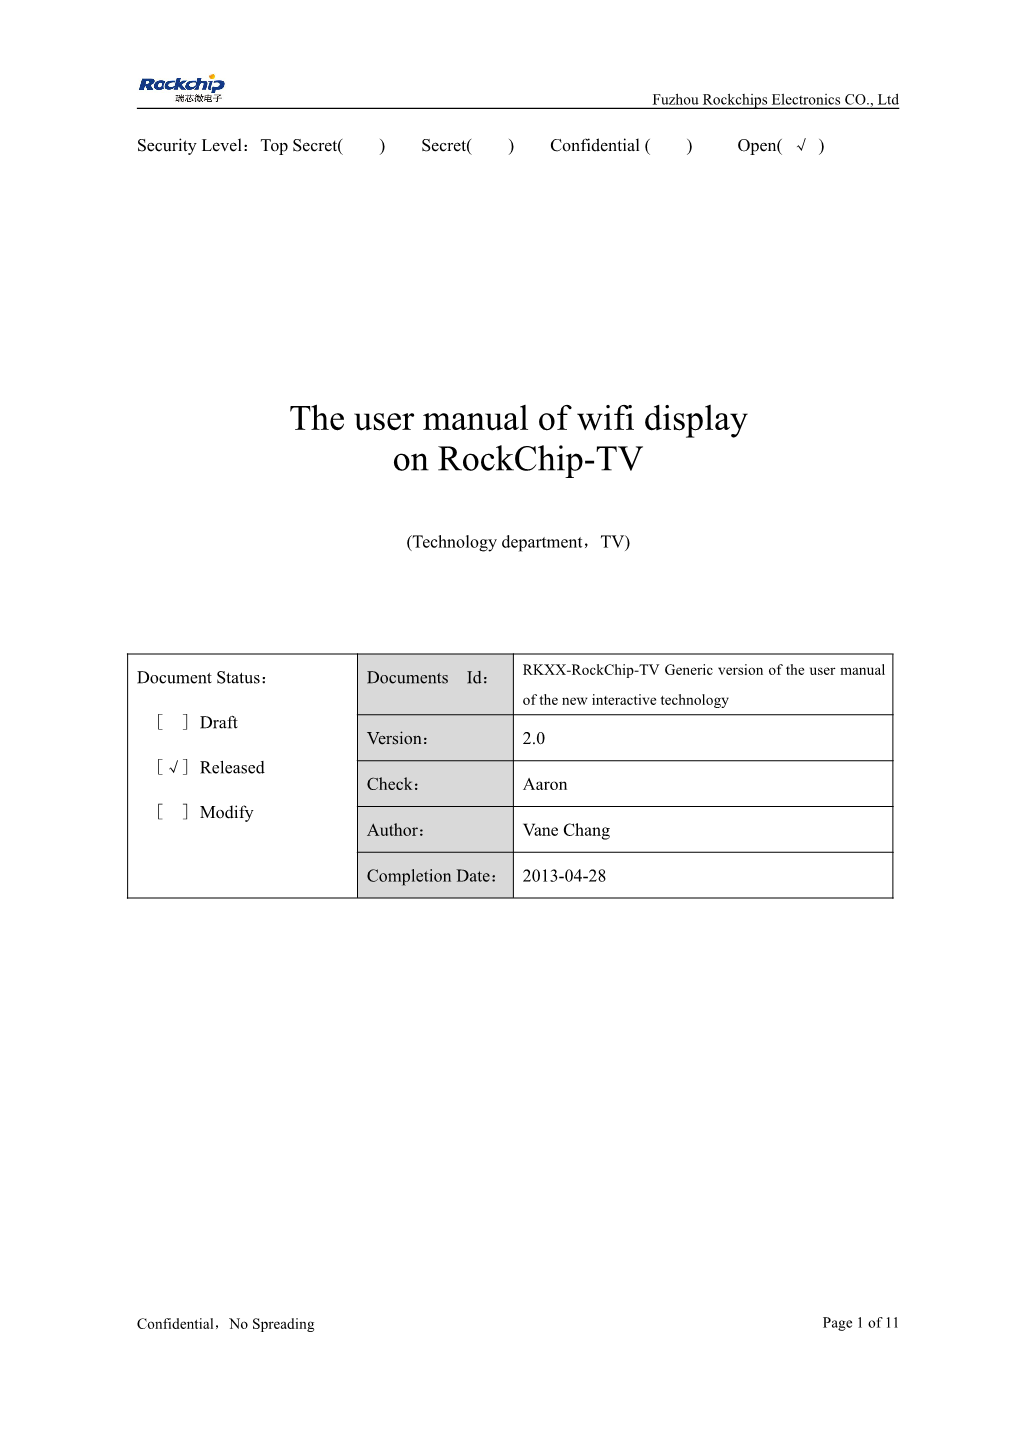 发布\RK3188 Doc\The User Manual of Wifi Display